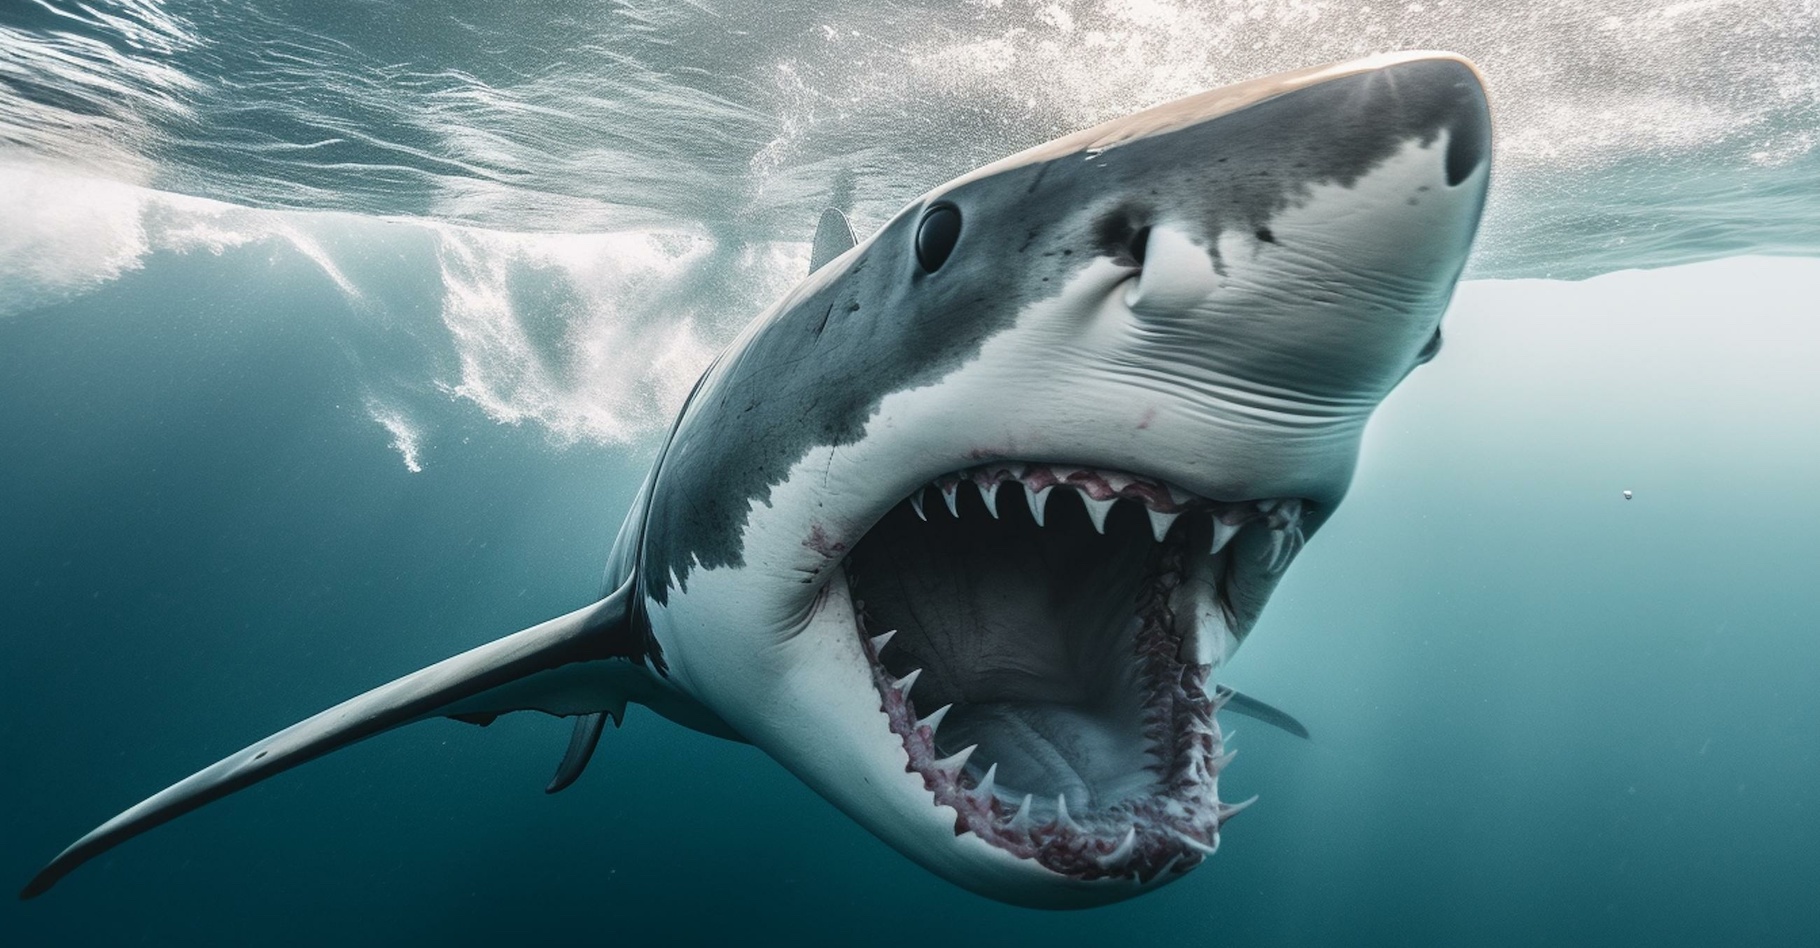 À côté de l’être humain, le requin pourrait bien faire figure de piètre prédateur, suggère une équipe internationale de chercheurs. © Circe, Adobe Stock